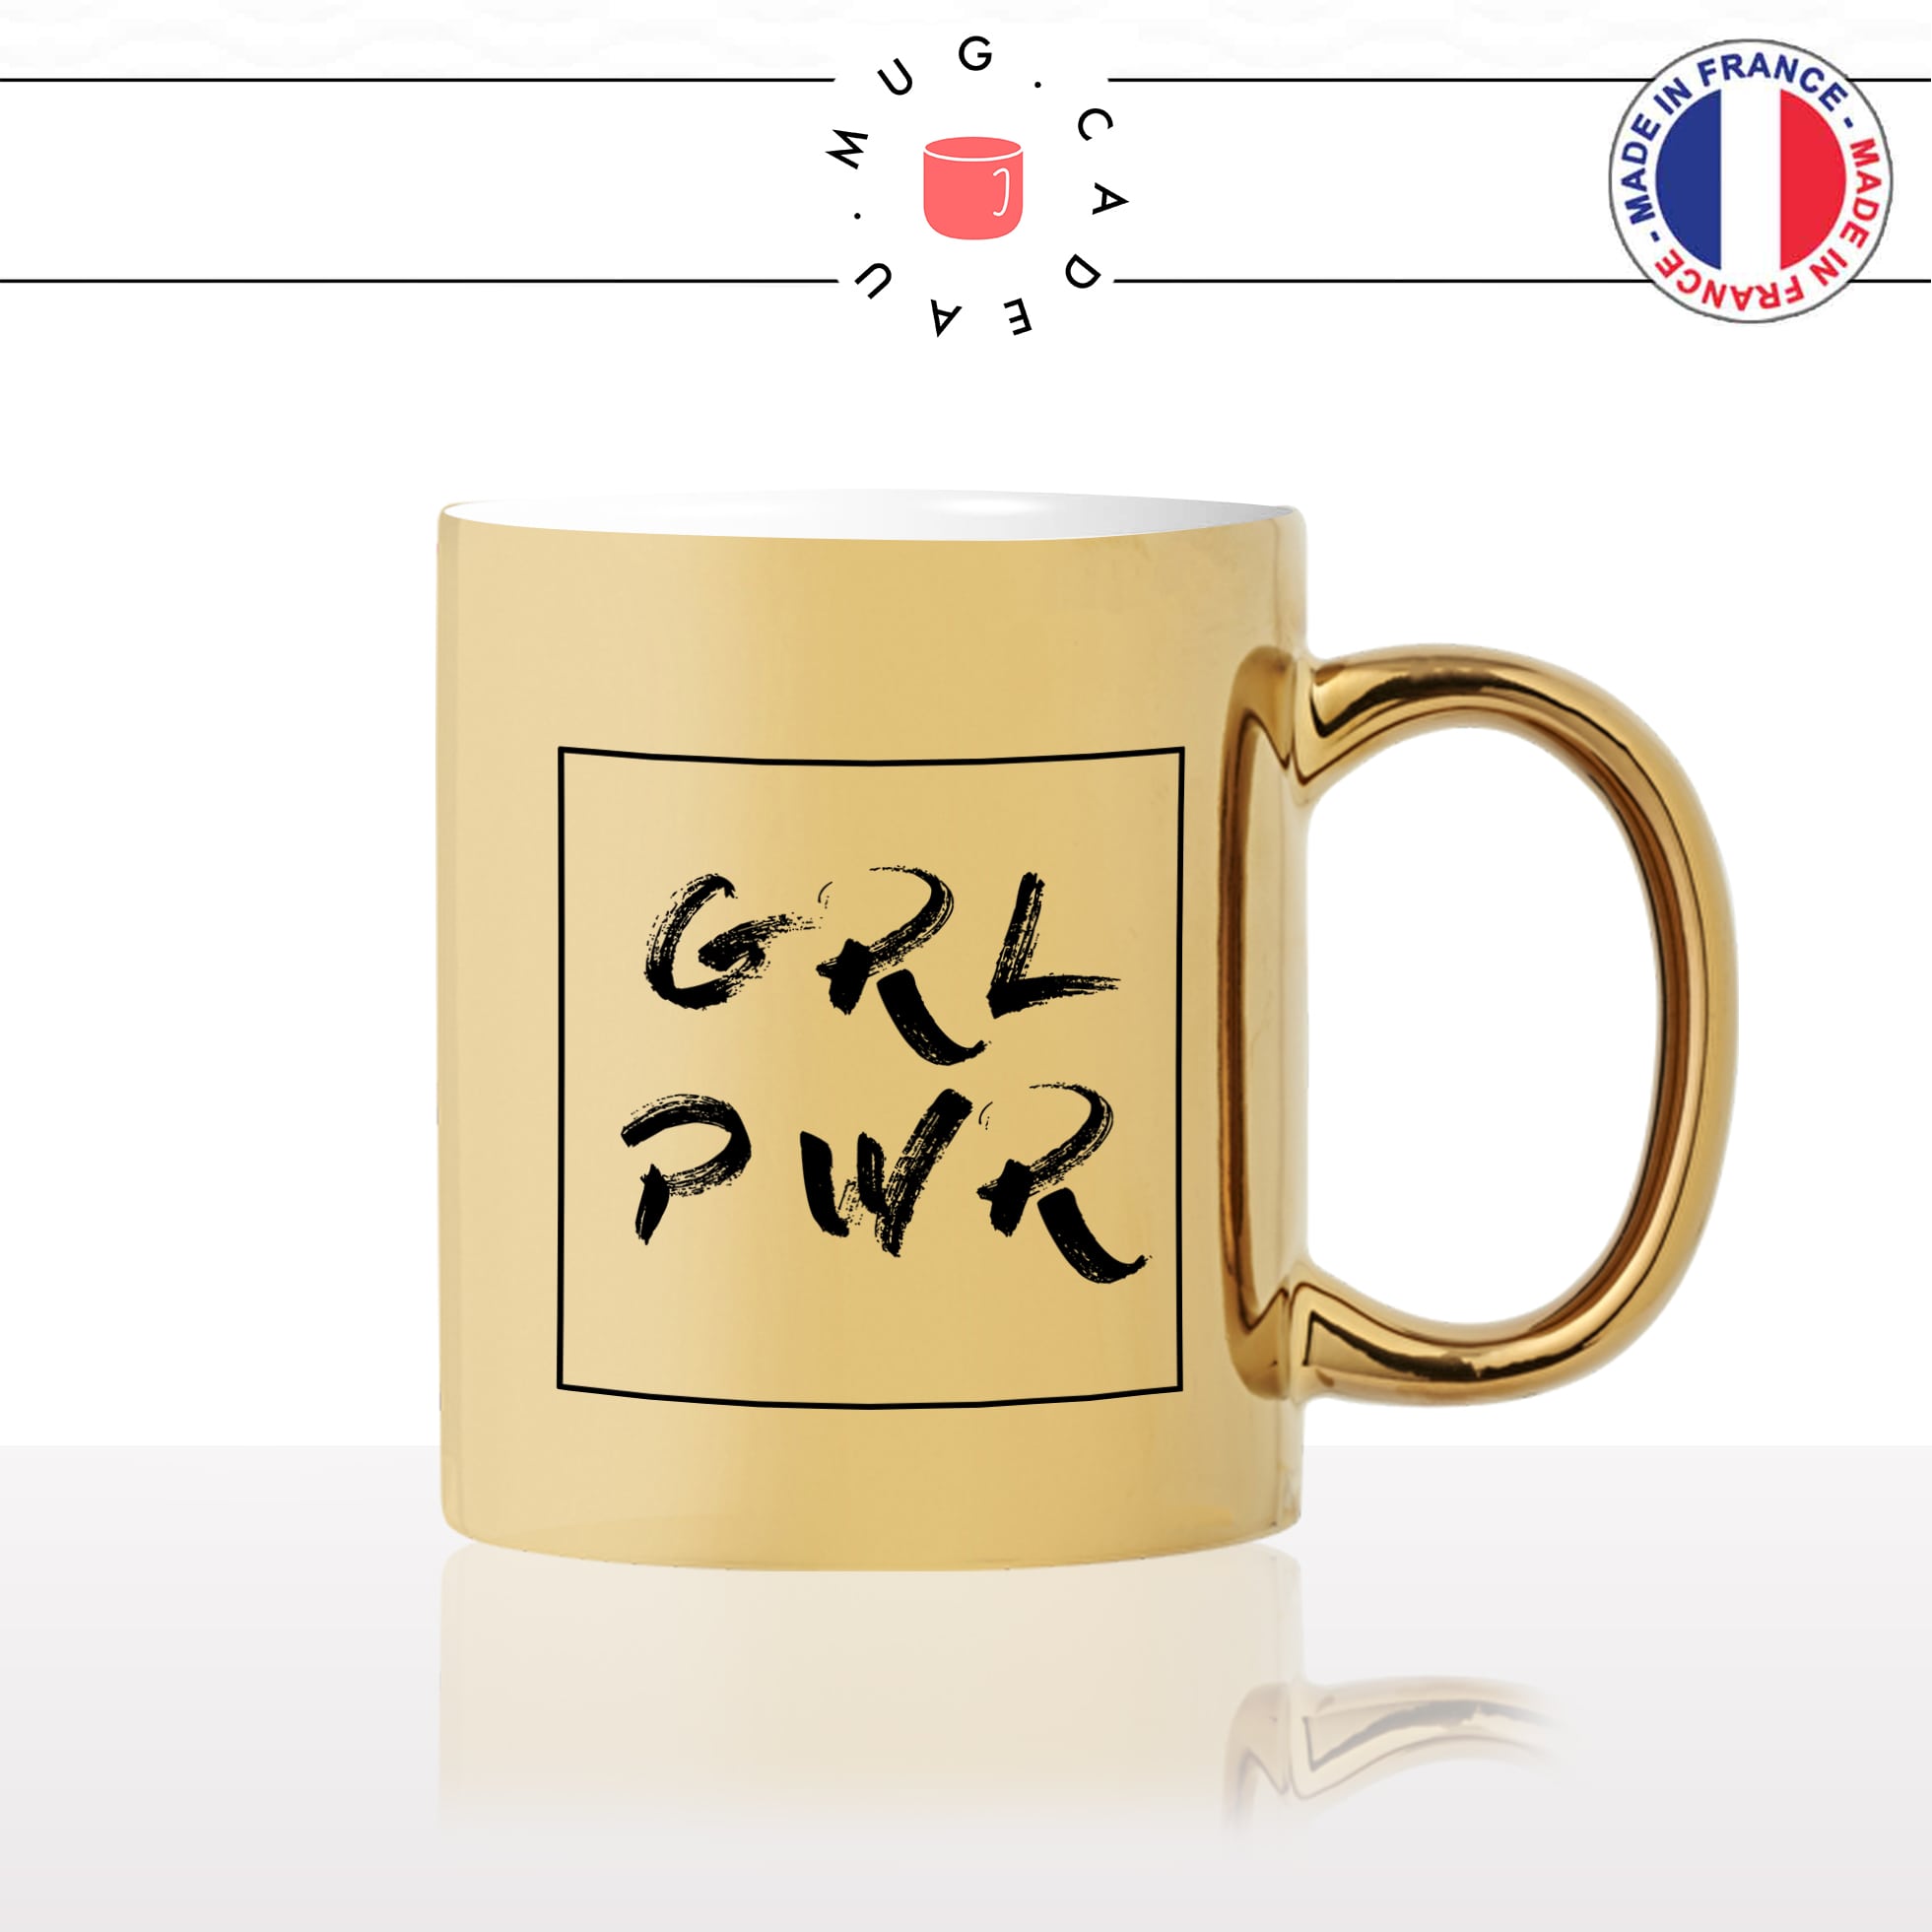 mug-tasse-doré-or-gold-girl-power-effet-pinceau-citation-phrase-dicton-humour-fun-idée-cadeau-personnalisé-café-thé2-min